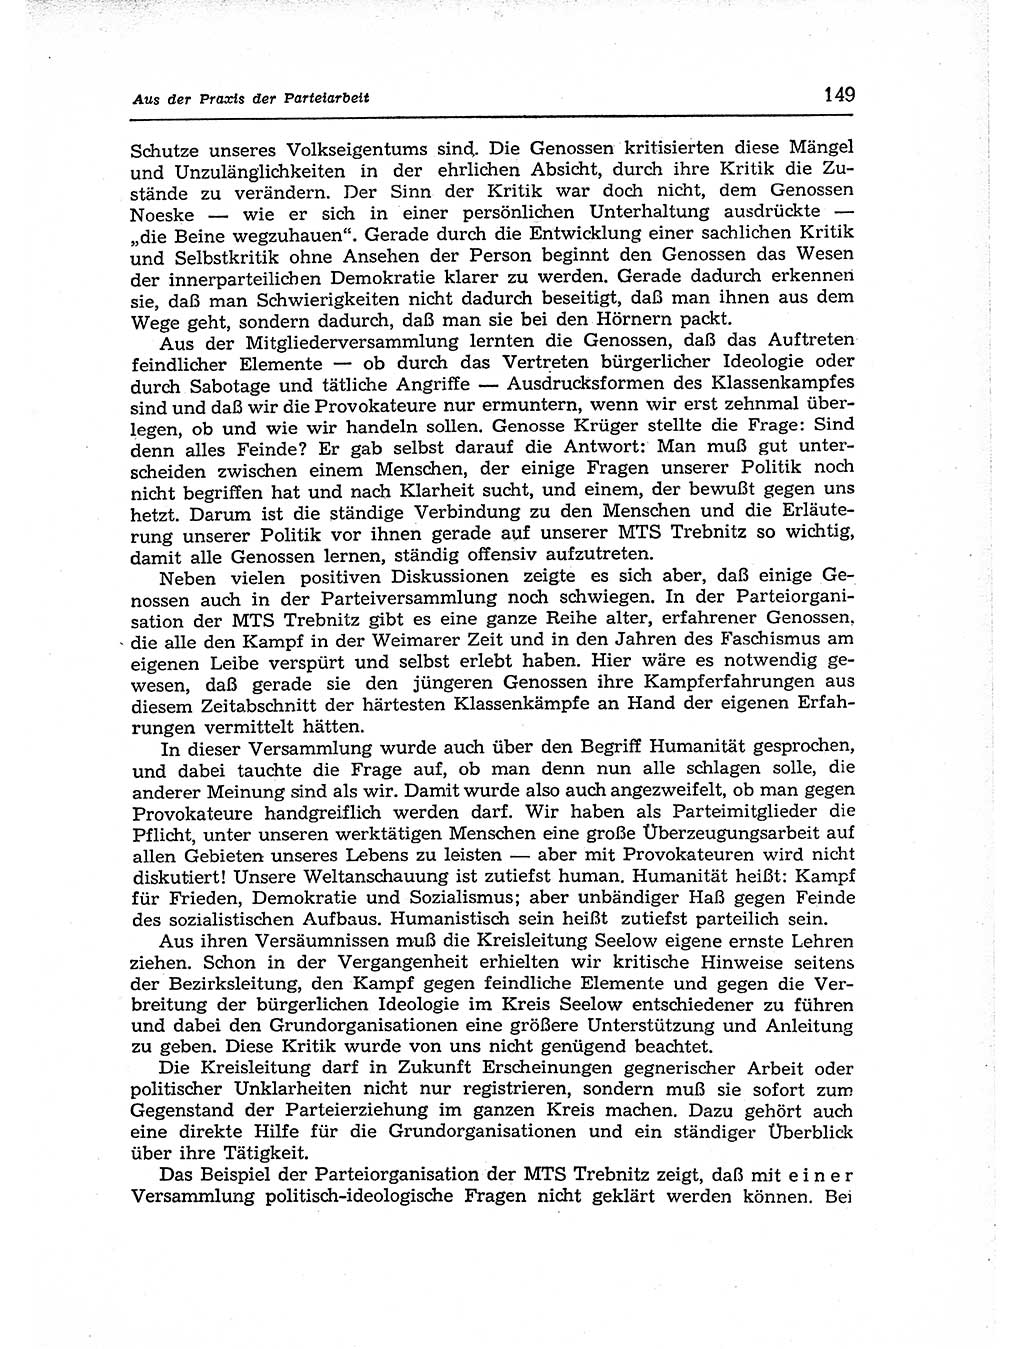 Neuer Weg (NW), Organ des Zentralkomitees (ZK) der SED (Sozialistische Einheitspartei Deutschlands) für Fragen des Parteiaufbaus und des Parteilebens, 12. Jahrgang [Deutsche Demokratische Republik (DDR)] 1957, Seite 149 (NW ZK SED DDR 1957, S. 149)